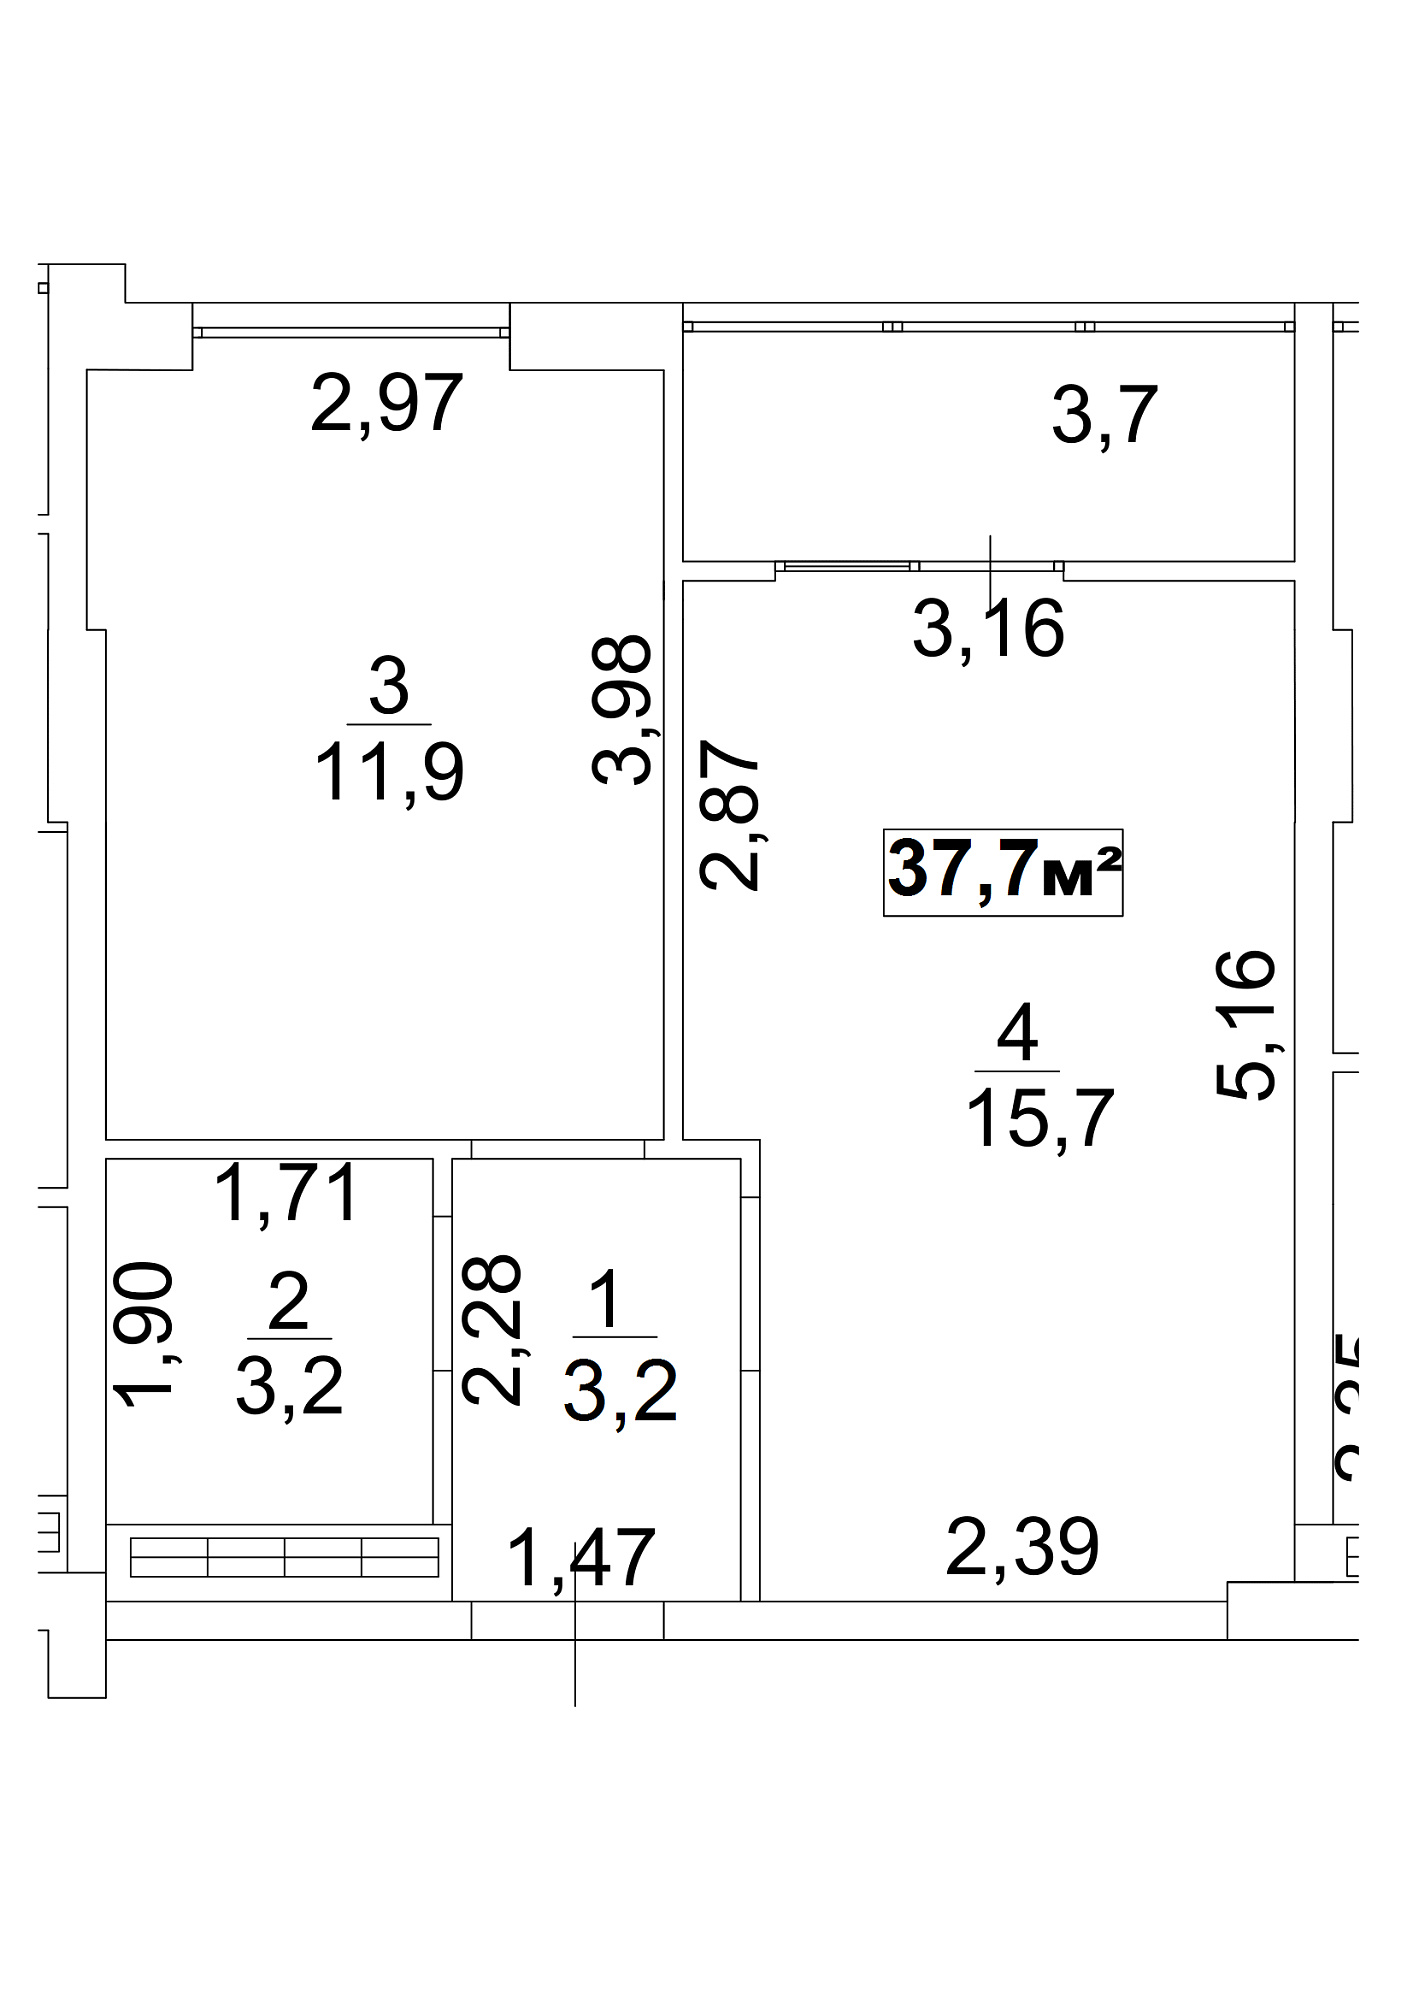 Планировка 1-к квартира площей 37.7м2, AB-13-04/00030.